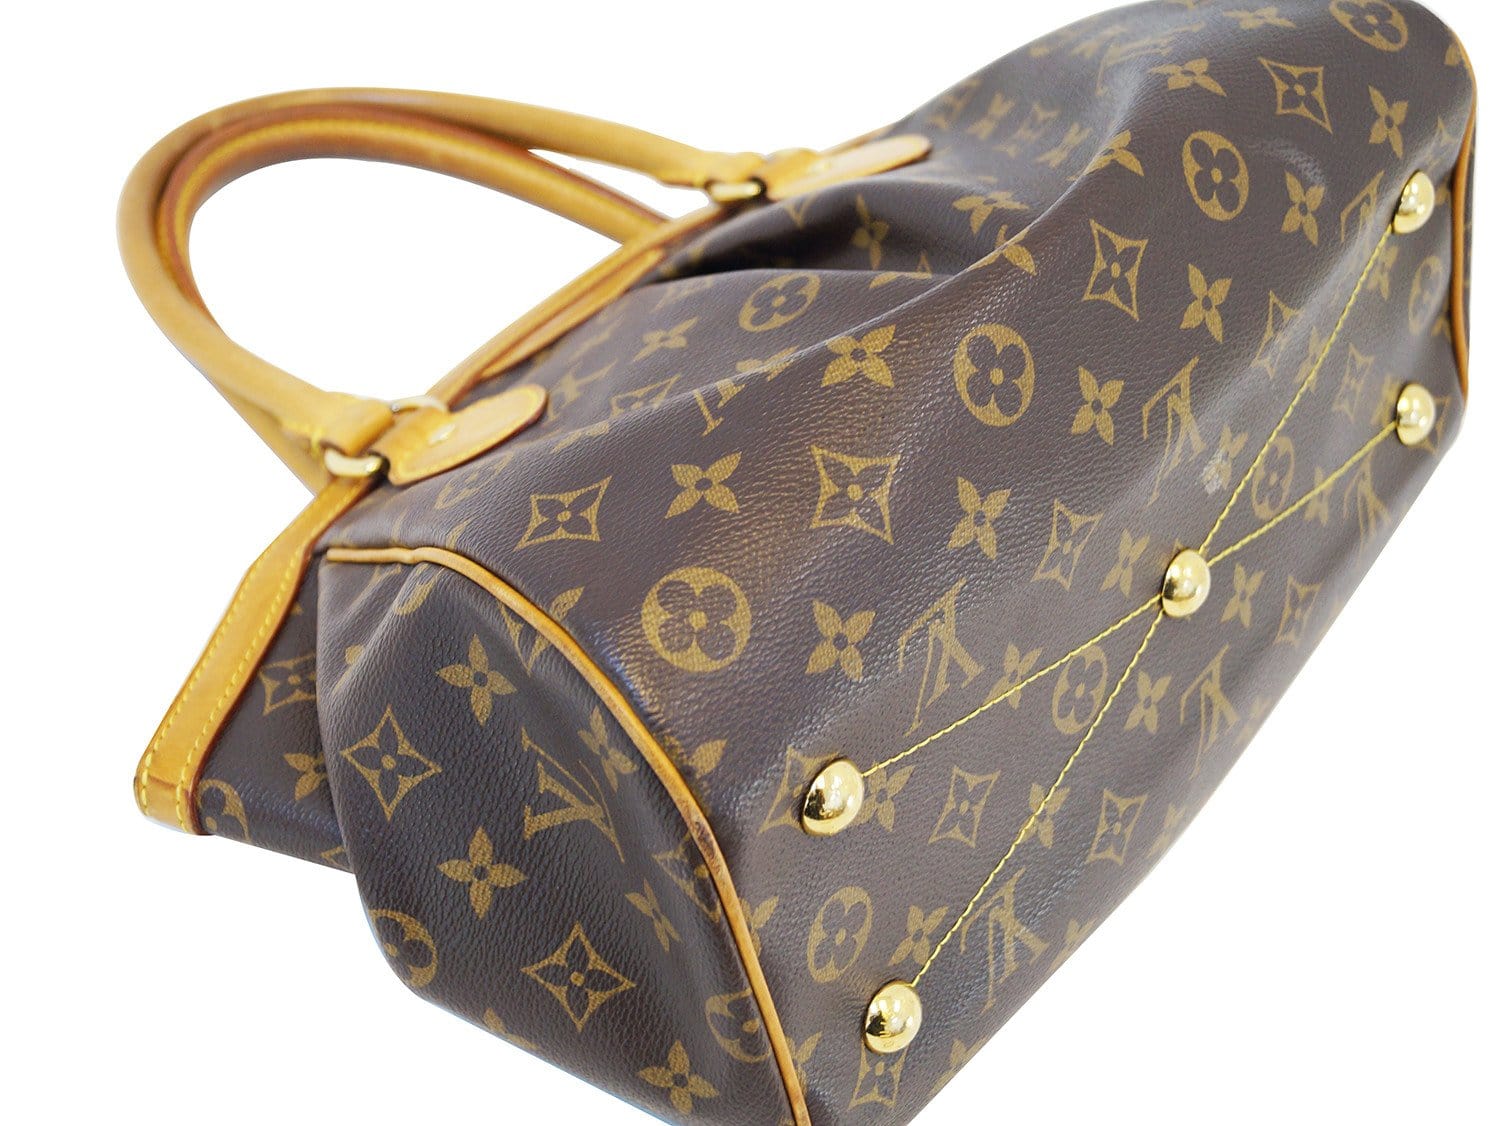 100% Authentic Louis Vuitton Monogram Tivoli PM Shoulder Bag